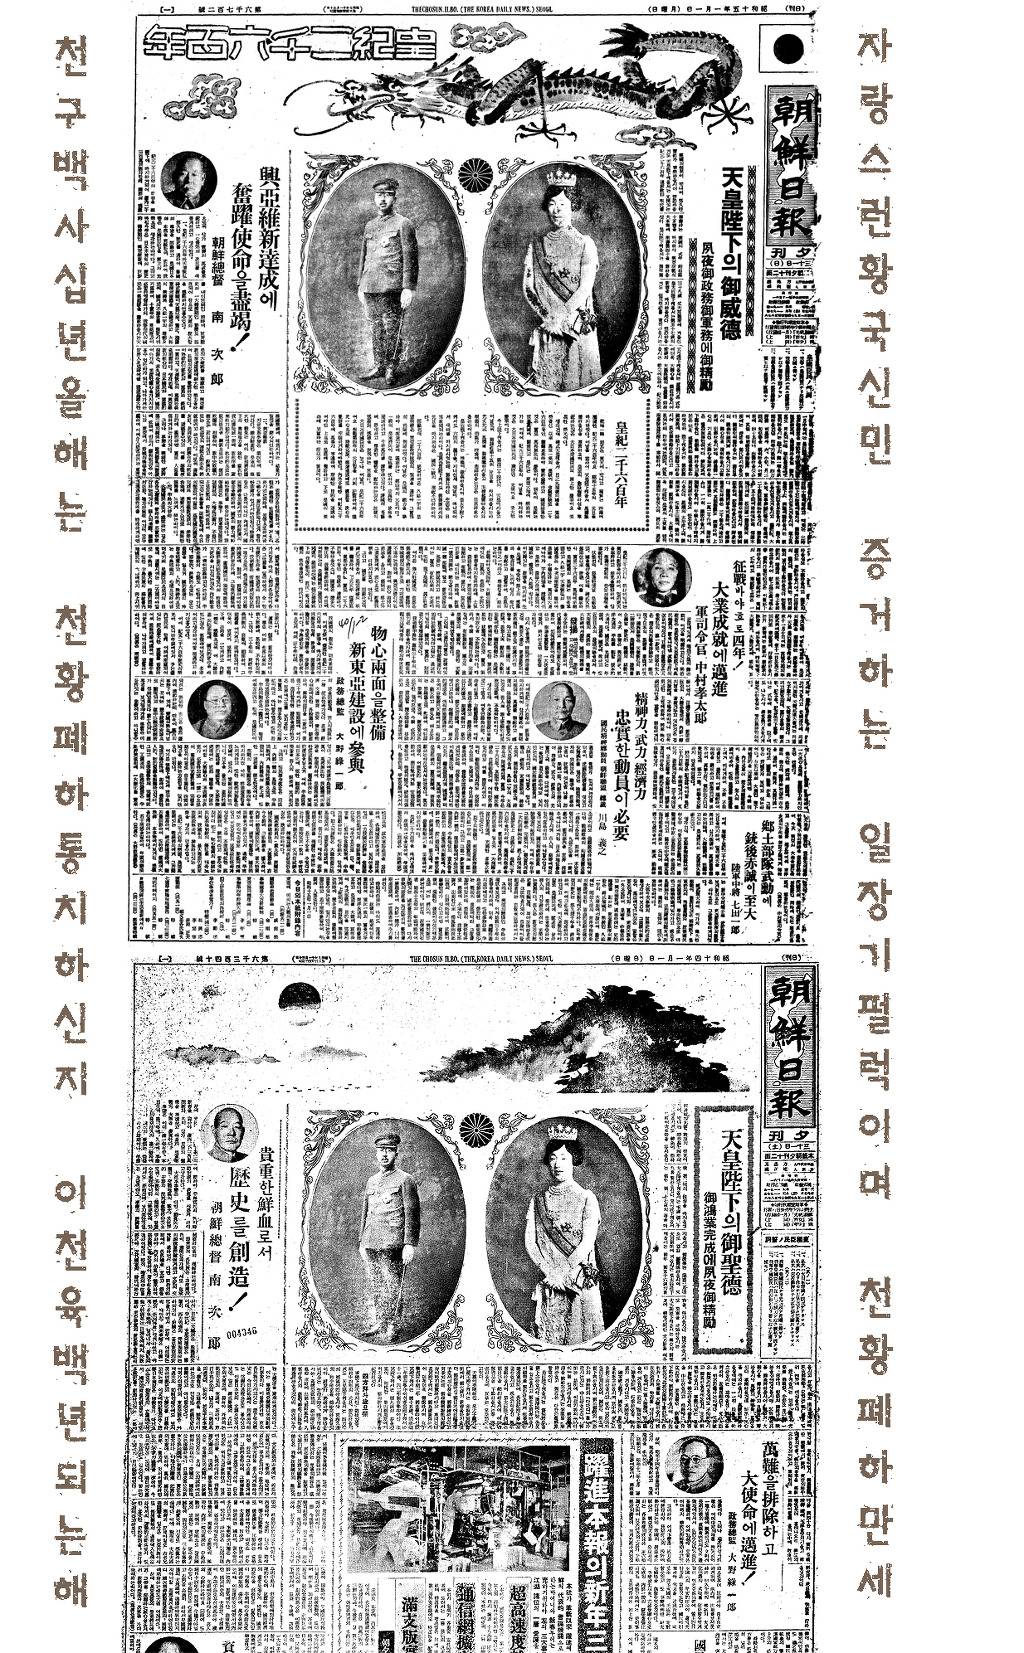 답이 안나오는 조선일보 , 동아일보 일제 강점기 part1. 근본이 썩었다..